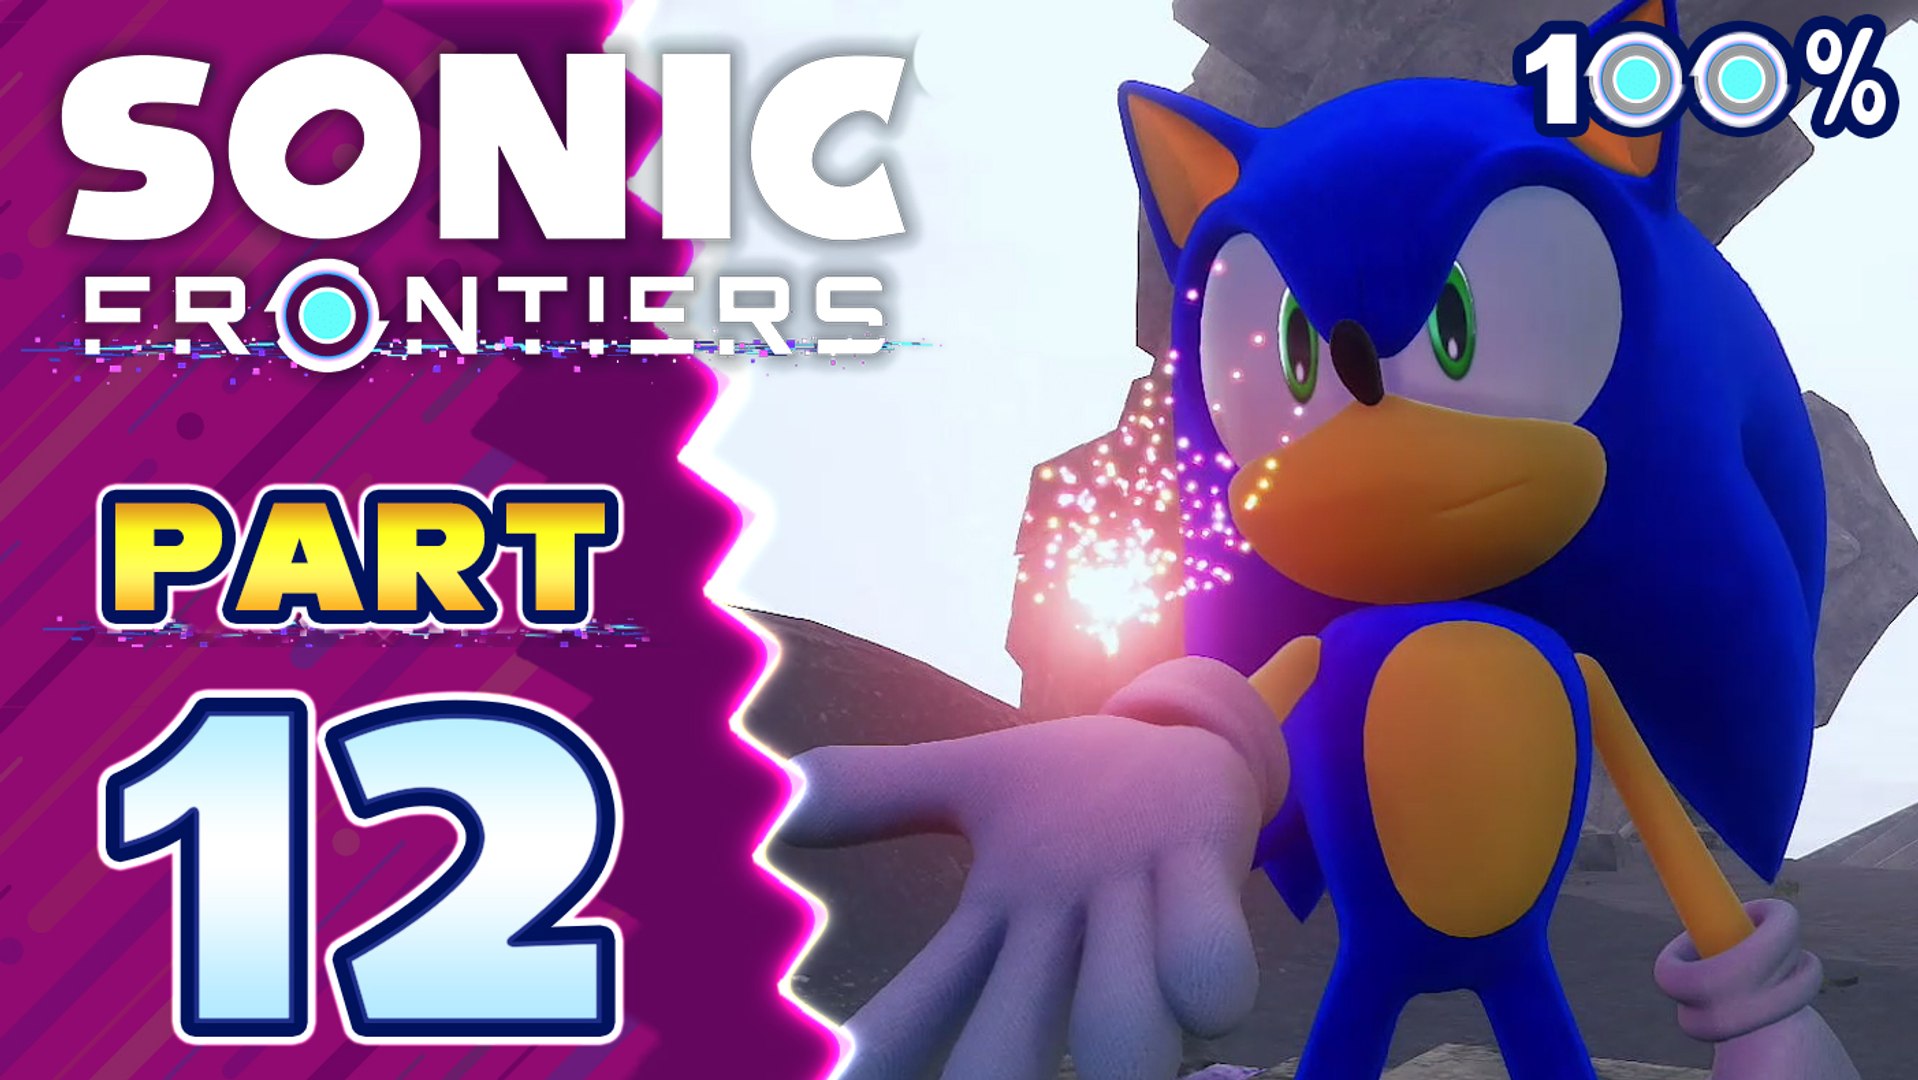 THE FINAL HORIZON Update Full 100% Walkthrough - Sonic Frontiers